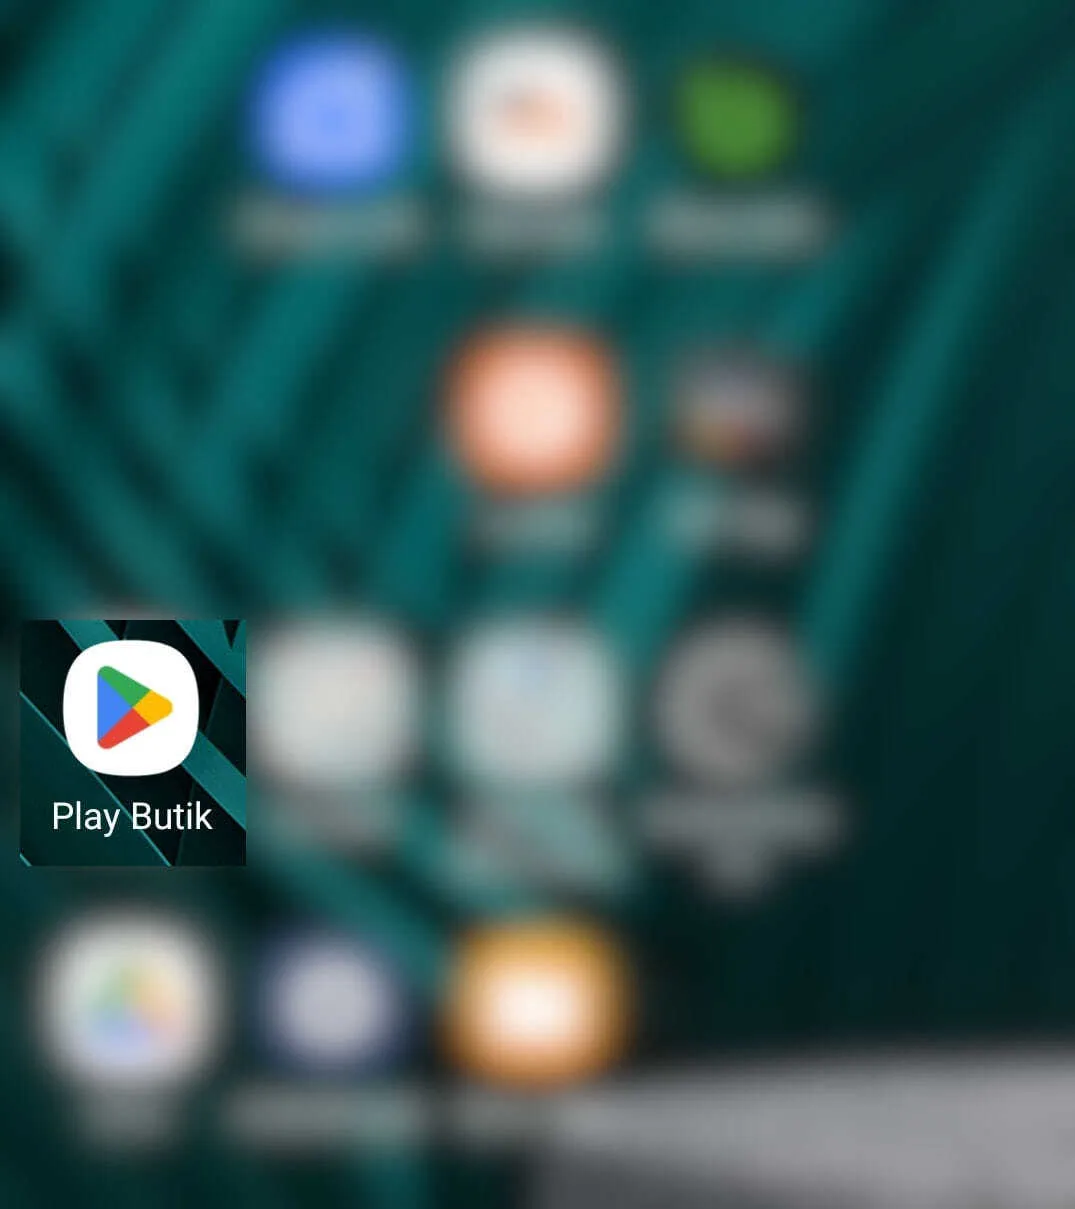 Find Play Butik på startskærmen i Android